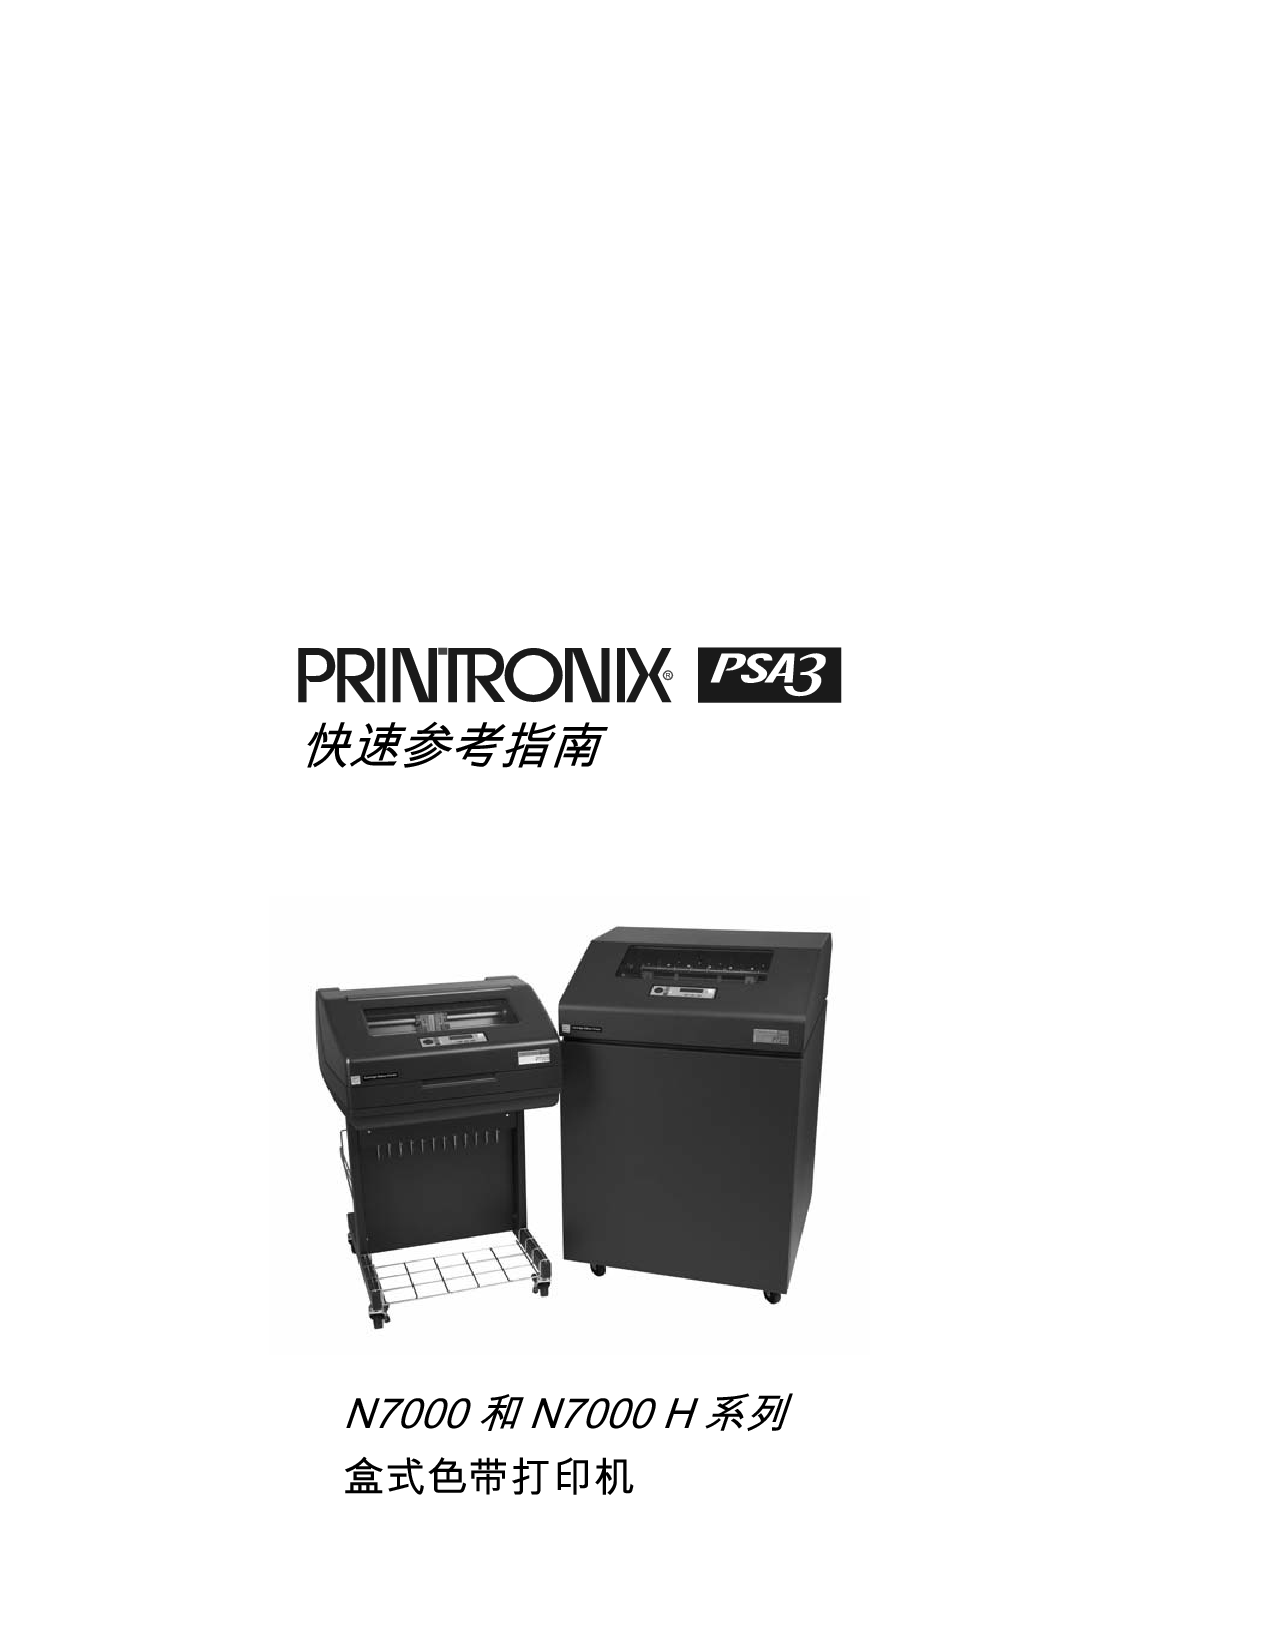 普印力 Printronix PSA3 N7000 快速参考指南 封面